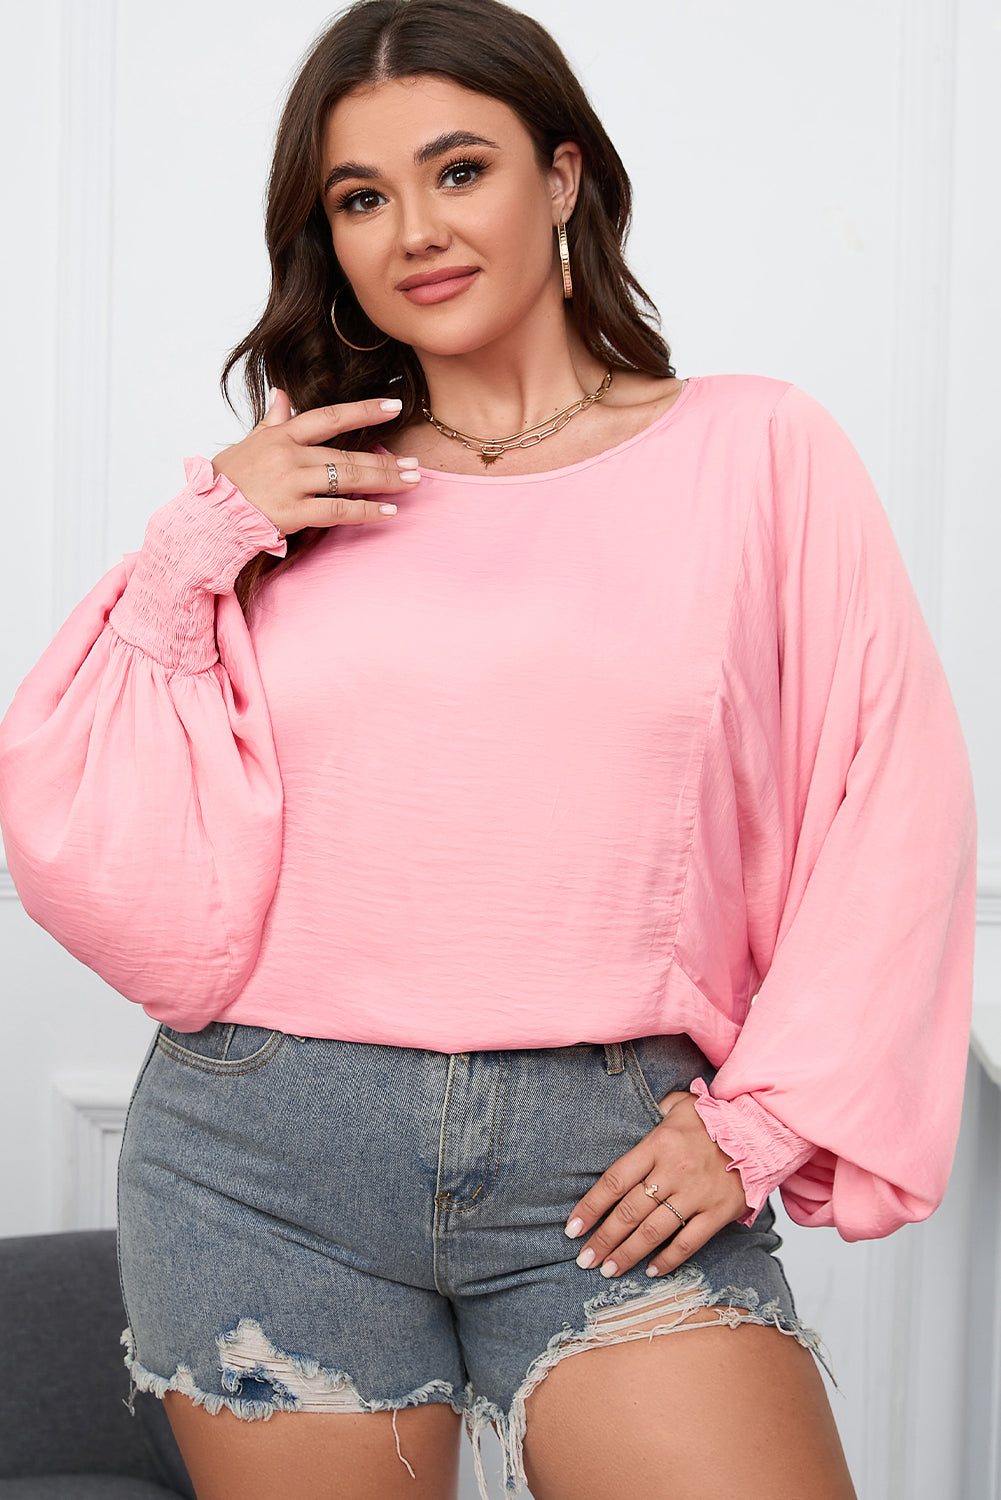 Rožnata majica z dolgimi rokavi v obliki dolmana in velike velikosti